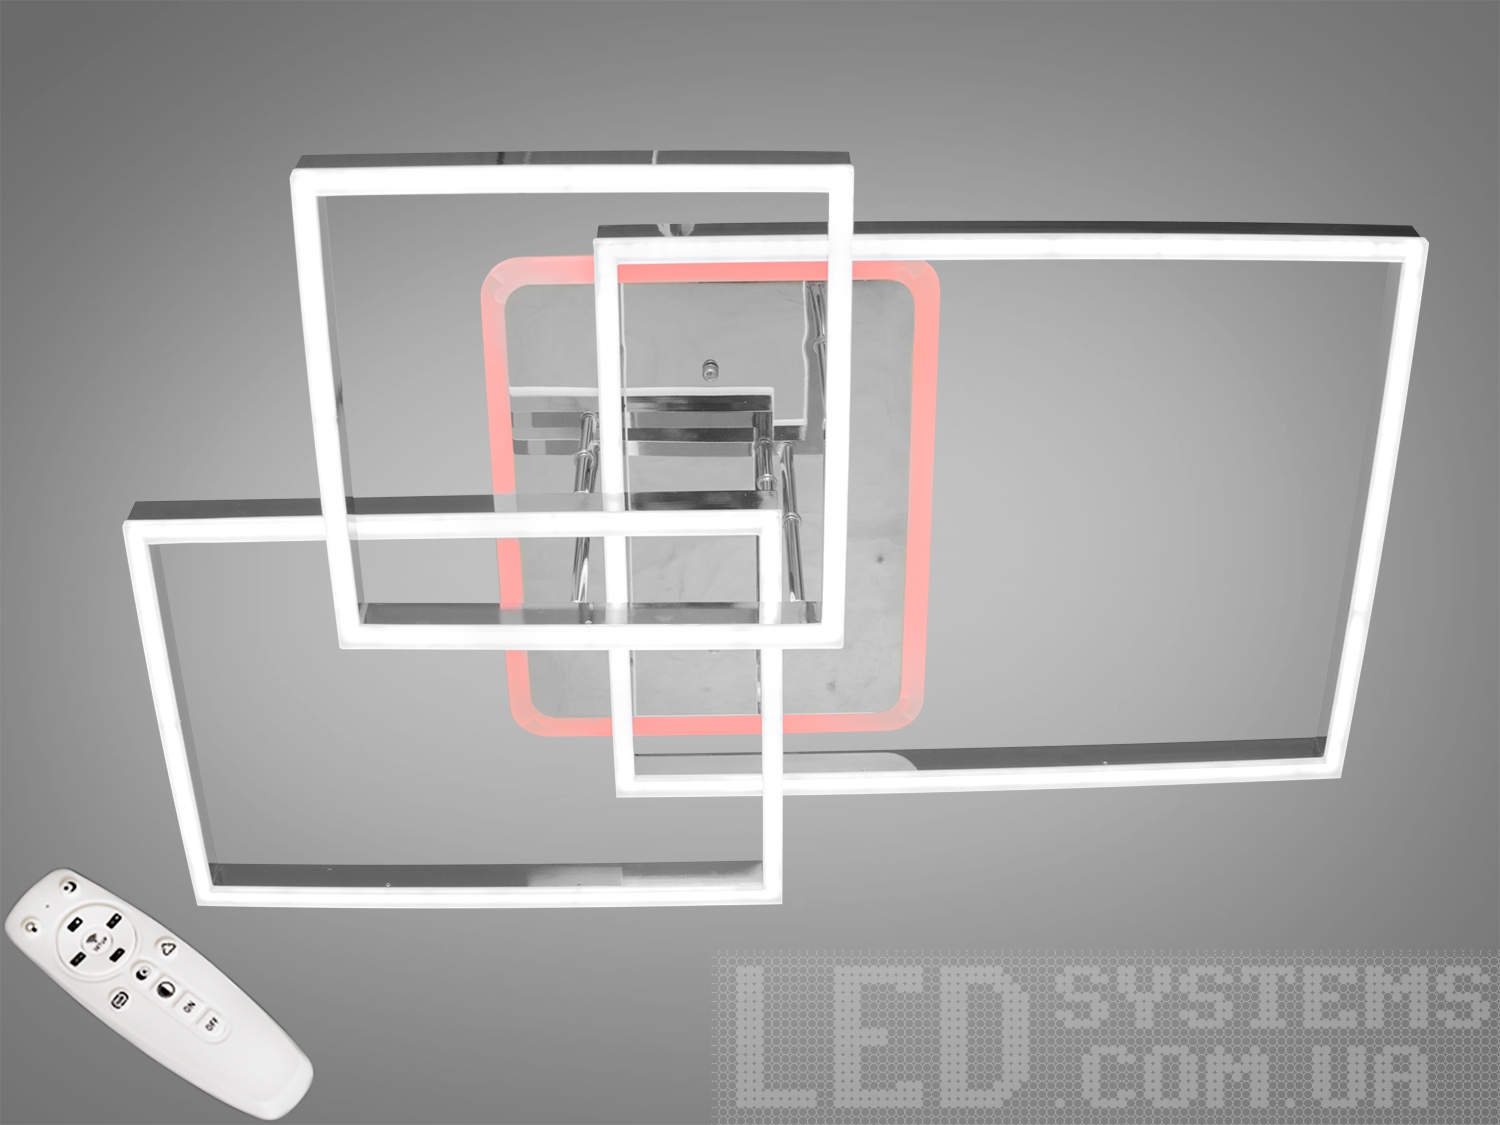 Стельова світлодіодна люстра для зали – це справжній витвір мистецтва освітлення, який збагатить будь-який сучасний інтер'єр. Завдяки своїм чистим лініям та геометричній формі, вона ідеально підходить для тих, хто цінує мінімалістичний дизайн з високими технологічними стандартами.
Люстра має потужність 140 Вт і оснащена димером та світлодіодним підсвічуванням, що дозволяє регулювати колірну температуру світла з пульта або вимикача. Ця функція додає гнучкості в створенні атмосфери приміщення, від яскравого світла, необхідного для робочого процесу чи зібрань, до м'якого теплого світла, що підходить для релаксації та відпочинку.
Окрім основного освітлення, вона має функцію нічника, яка створює м'яке та приглушене світло, ідеальне для використання вночі. Це особливо корисно, якщо потрібно вставати вночі і не хочеться порушувати спокій темряви яскравим світлом.
Люстра має акриловий розсіювач, який забезпечує рівномірне розподілення світла, уникаючи засліплення та тіней, що є важливим для створення комфортного освітленого простору. Крім того, акрилові матеріали відрізняються високою міцністю та довговічністю, що робить цю люстру надійним джерелом світла на багато років.
Гнучкість у виборі стилів та освітлювальних режимів робить цю люстру ідеальною для різноманітних просторів – від домашніх інтер'єрів до офісних зон. Вона не лише покращує візуальний досвід простору, але й додає практичності та стильного вигляду.